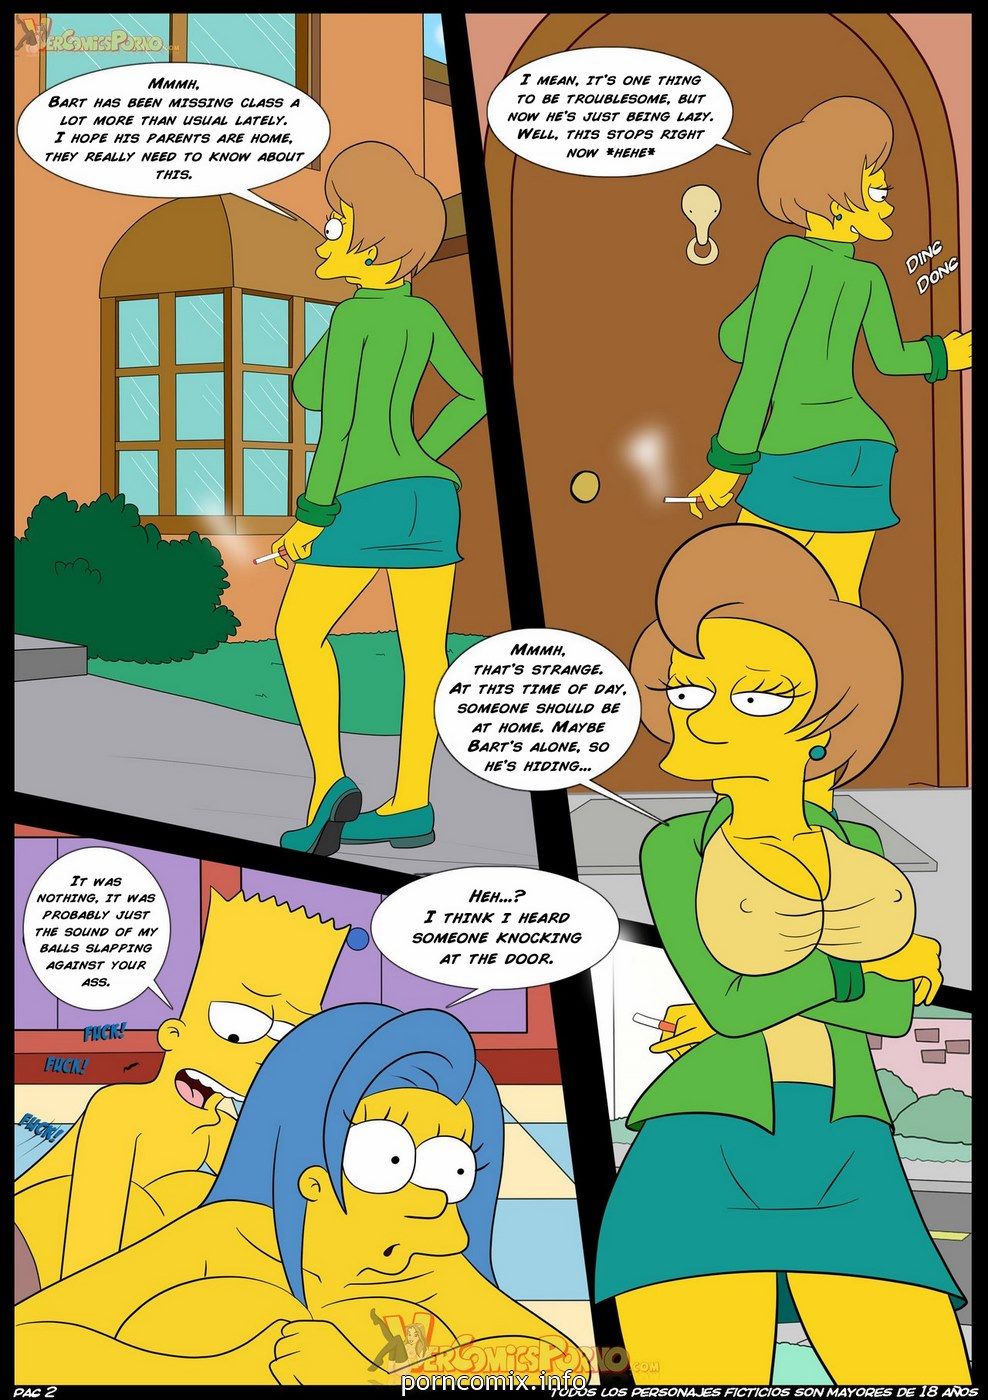 [CROC] Los Simpsons - Old Habits 4 page 3